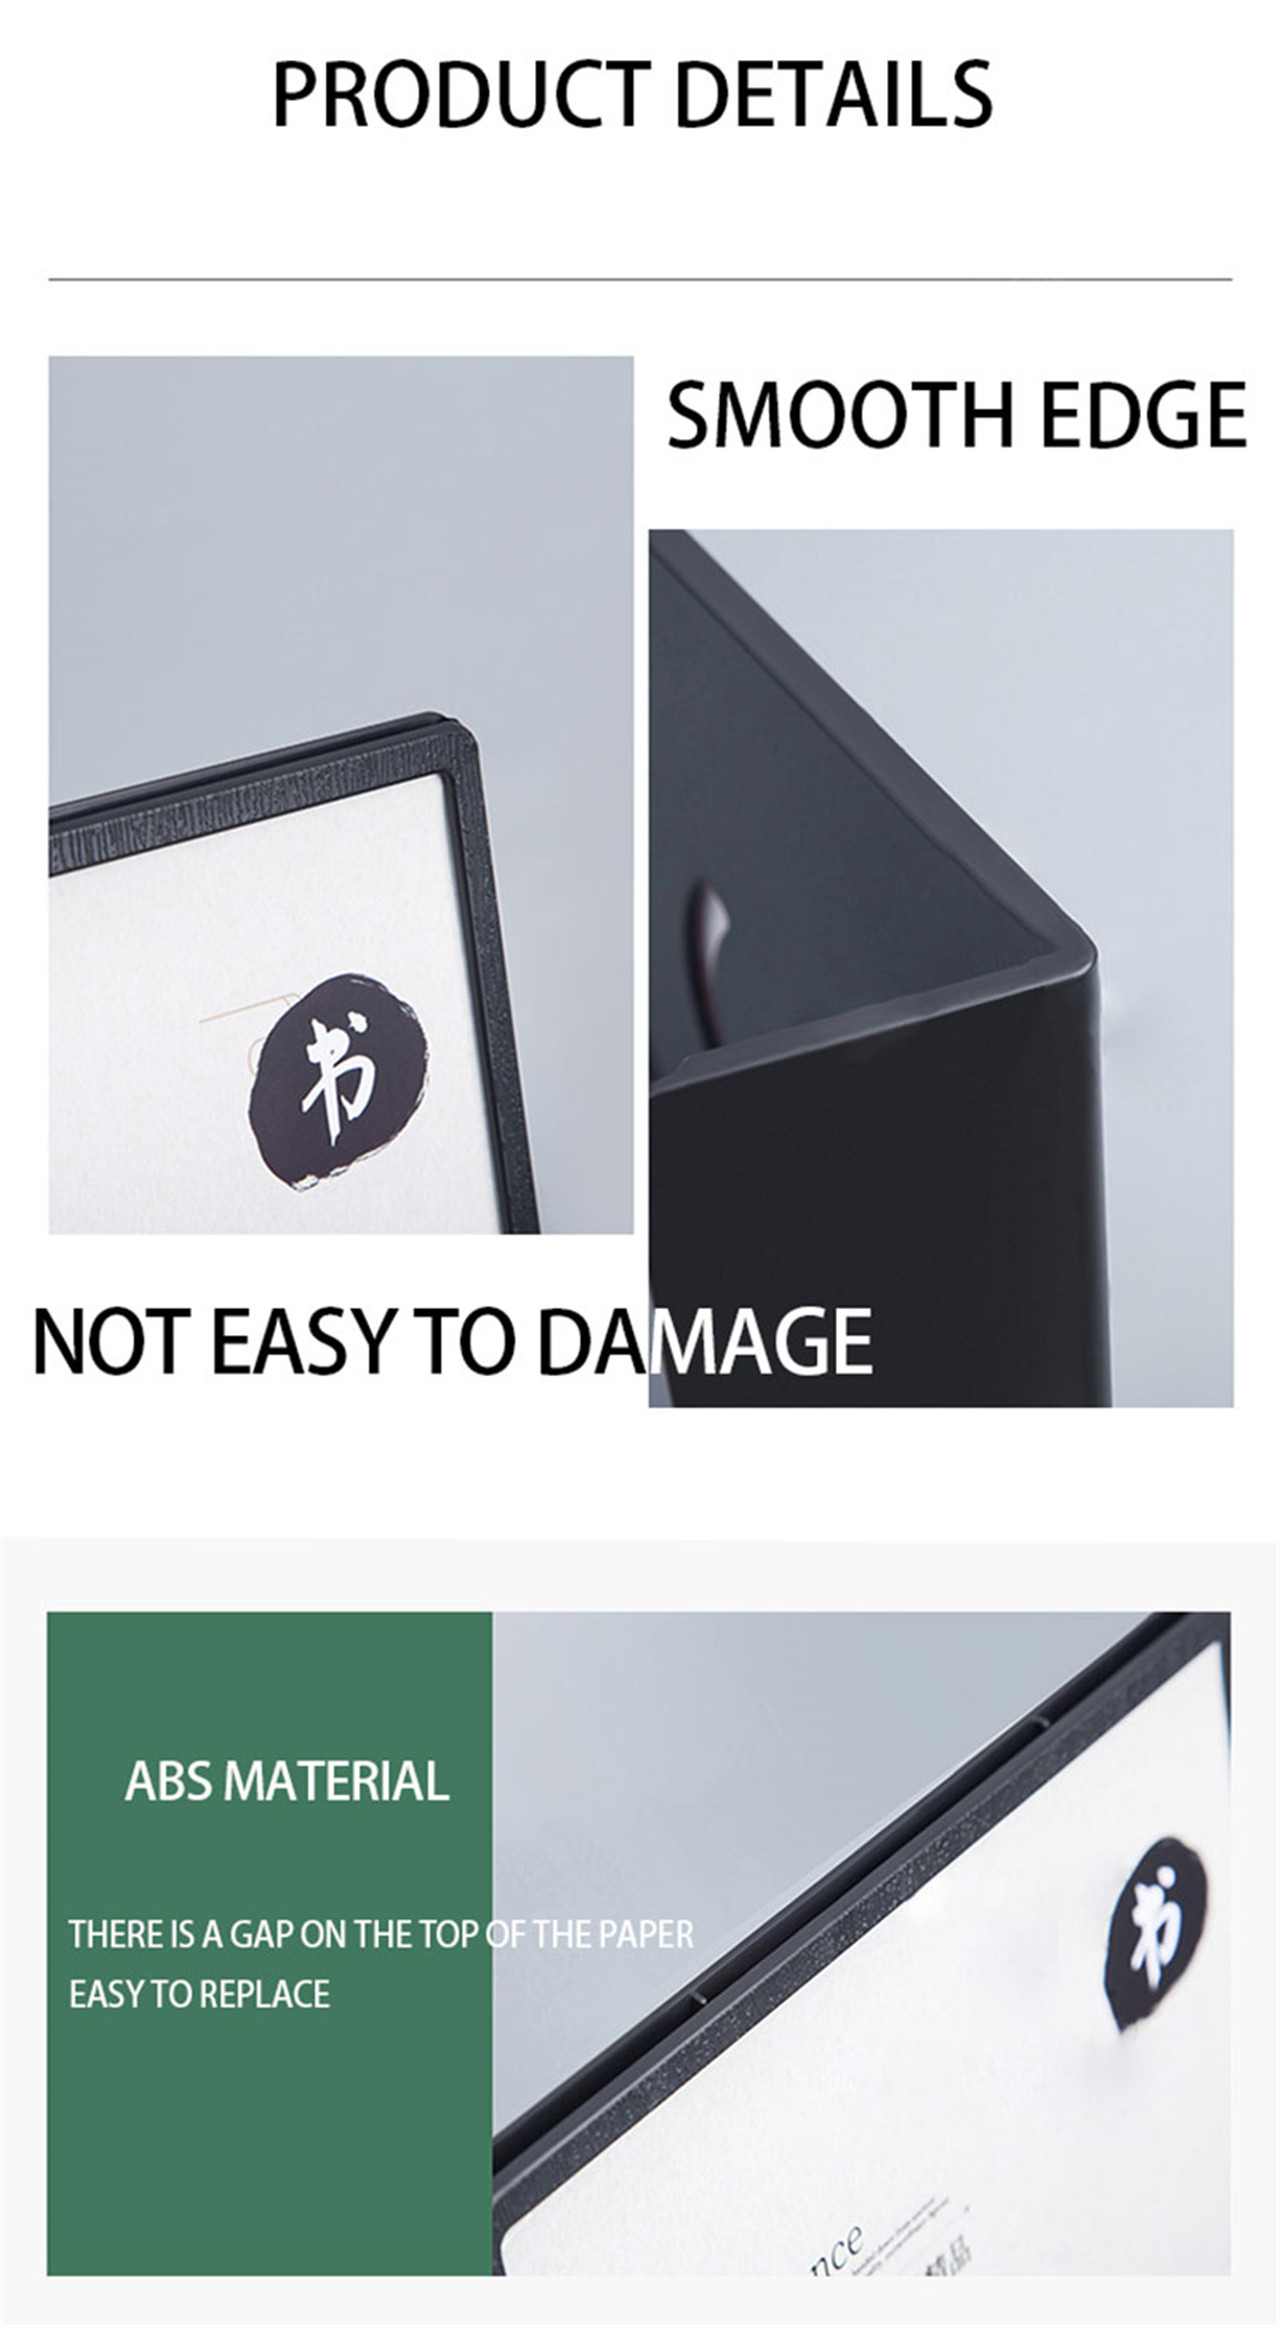 A4A5 obojstranný číry akrylát so základňou stolového pultu stojan na zobrazenie ponuky plagátov (6)